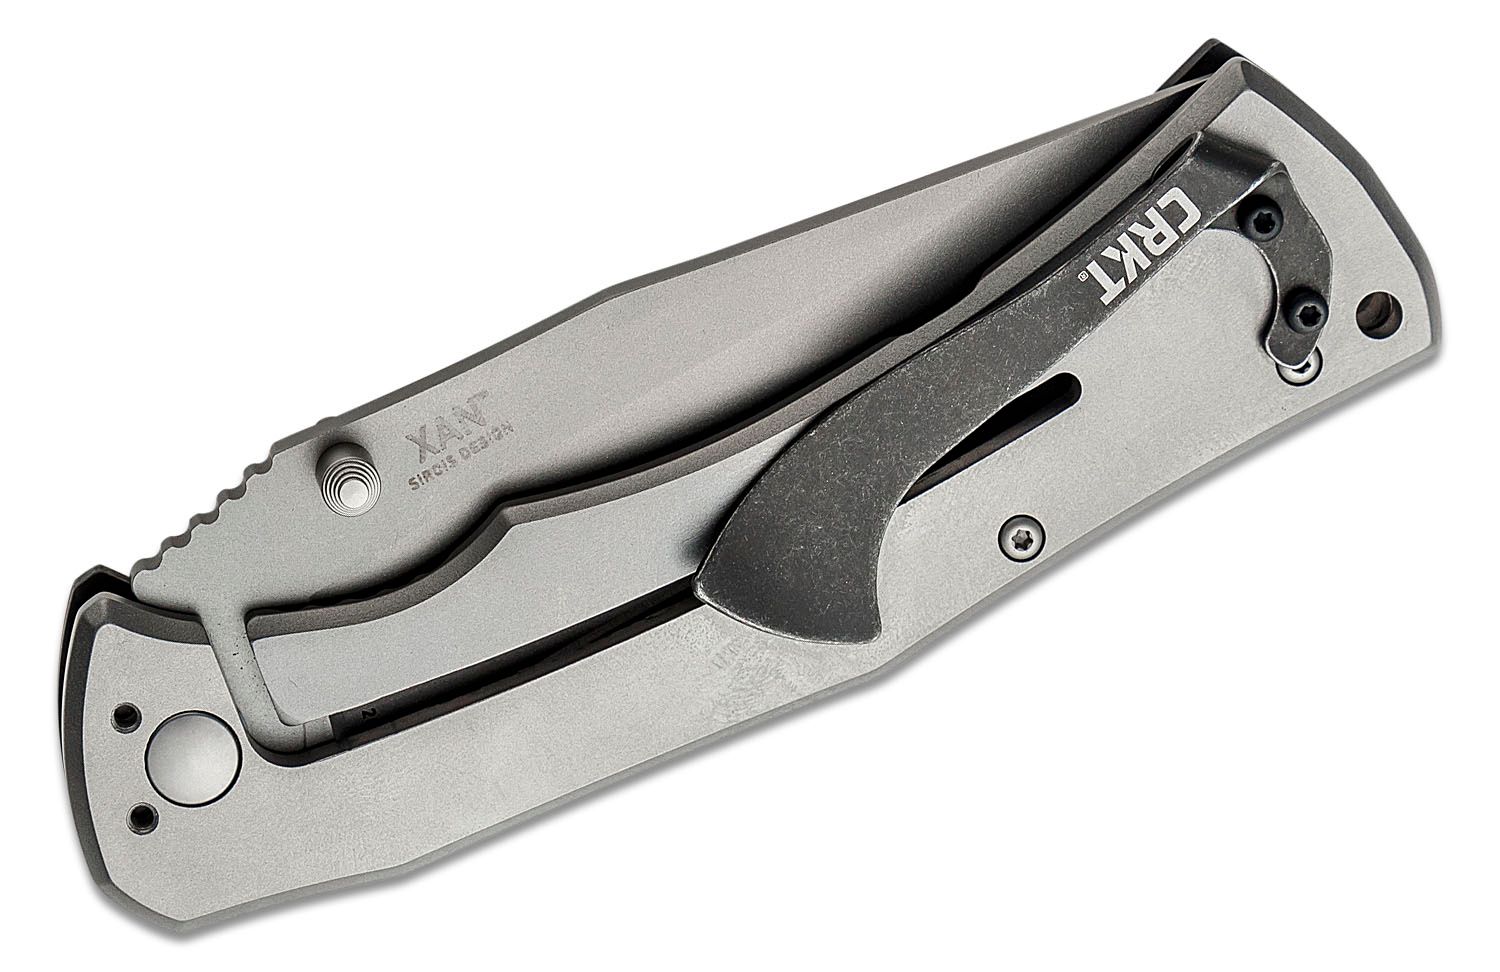 KS1187 - 3 inch paring knife – Oceanstar